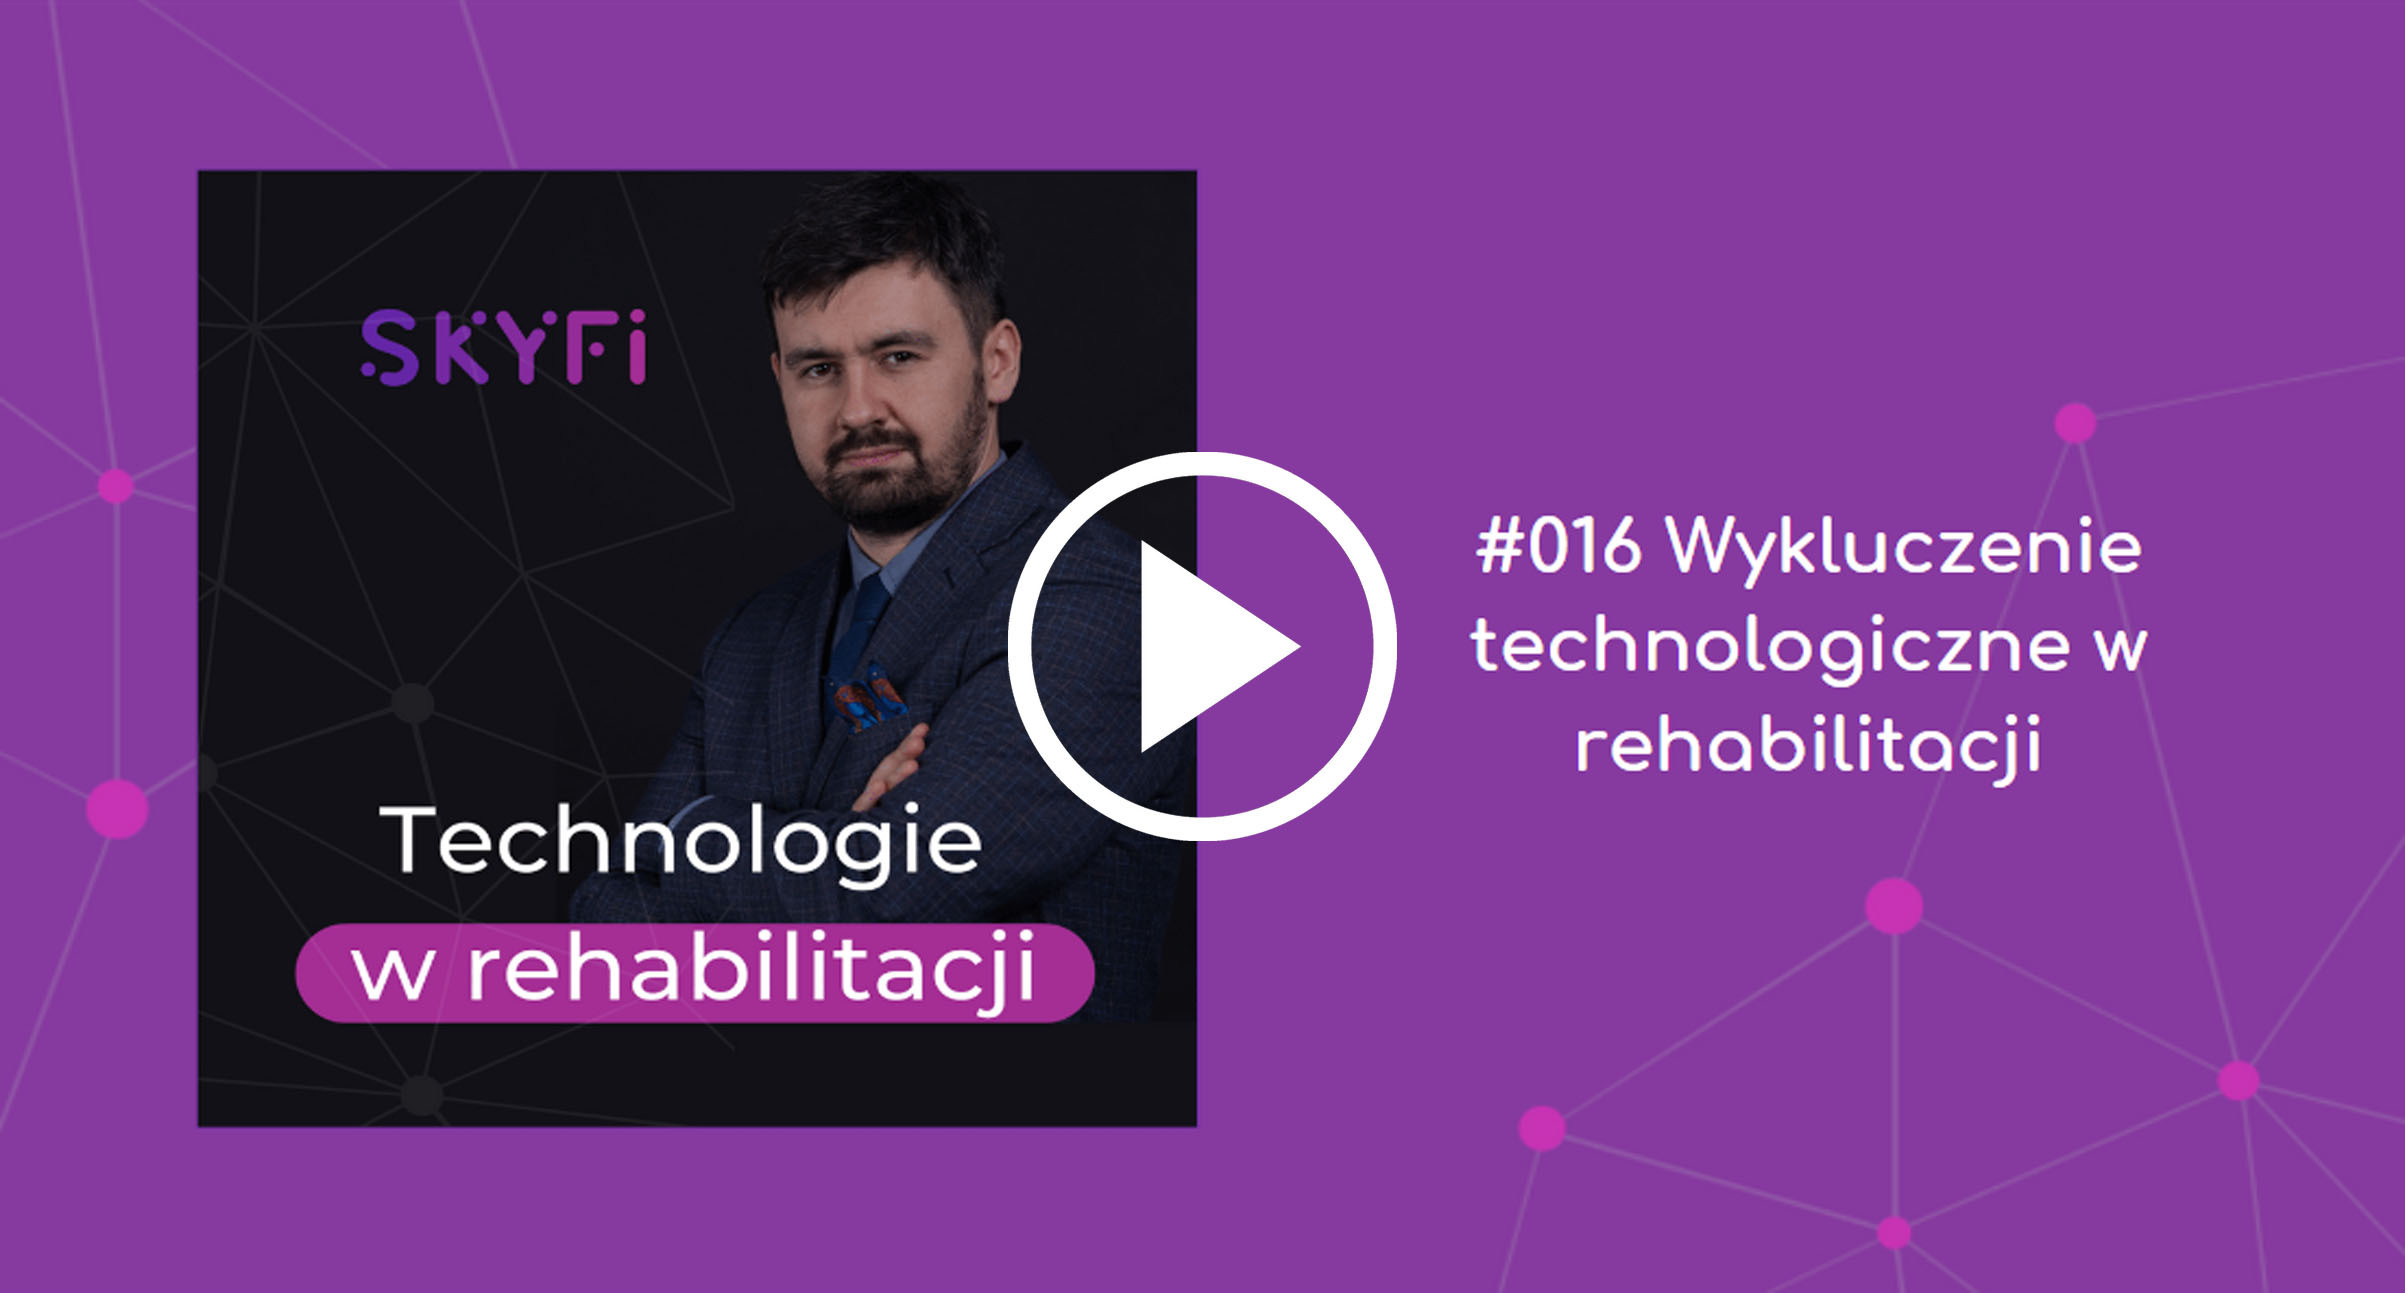 Podcast-16-wykluczenie-technologiczne-w-rehabilitacji-Skyfi